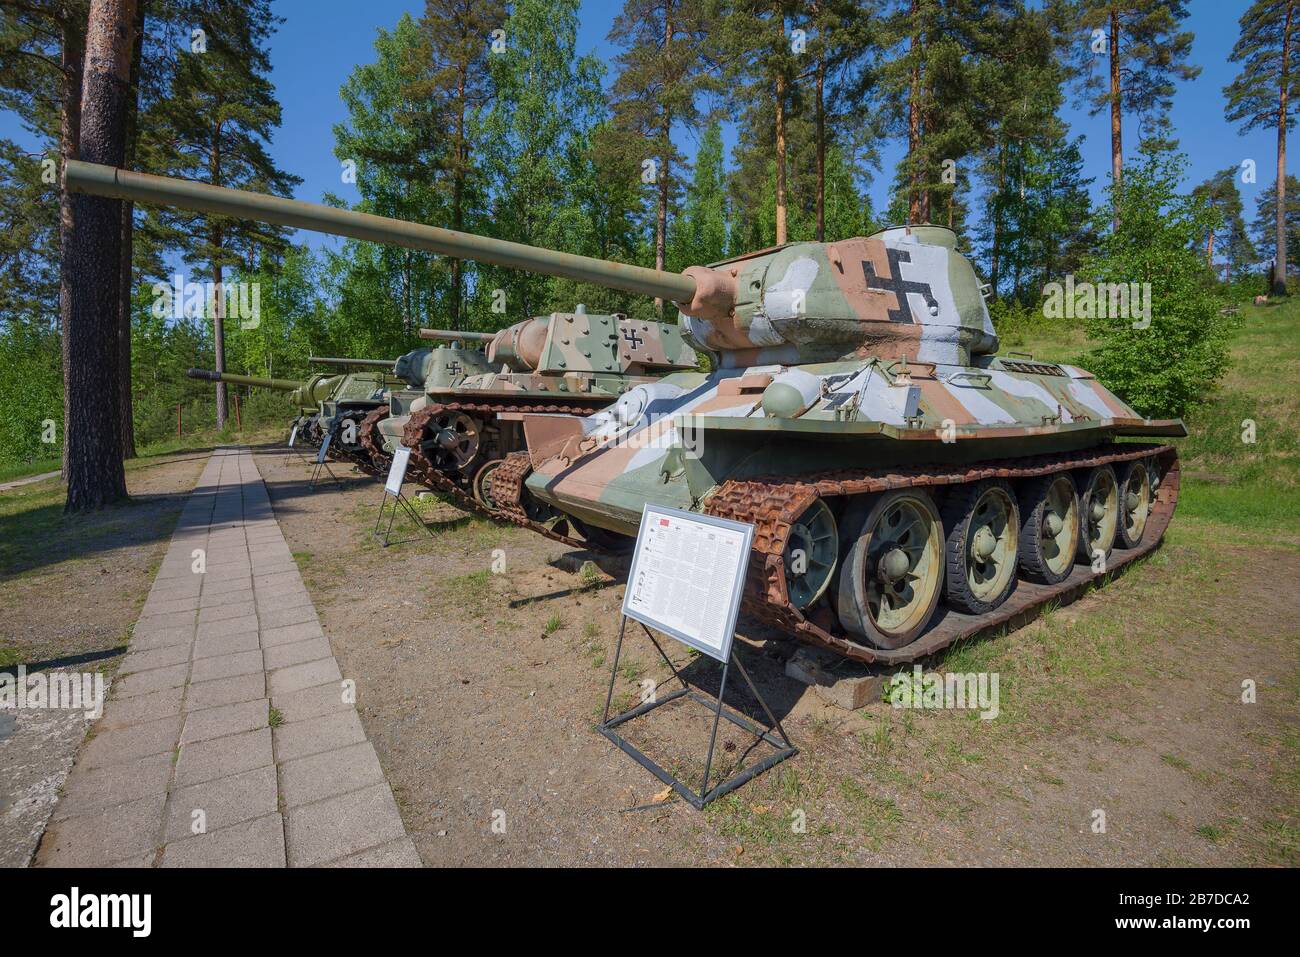 PAROLA, FINNLAND - 10. JUNI 2017: Der Panzer T-34-85 der sowjetischen Armee wurde im Gemälde der finnischen Armee im Museum gepanzerter Fahrzeuge der Stadt Parola gefangen genommen Stockfoto